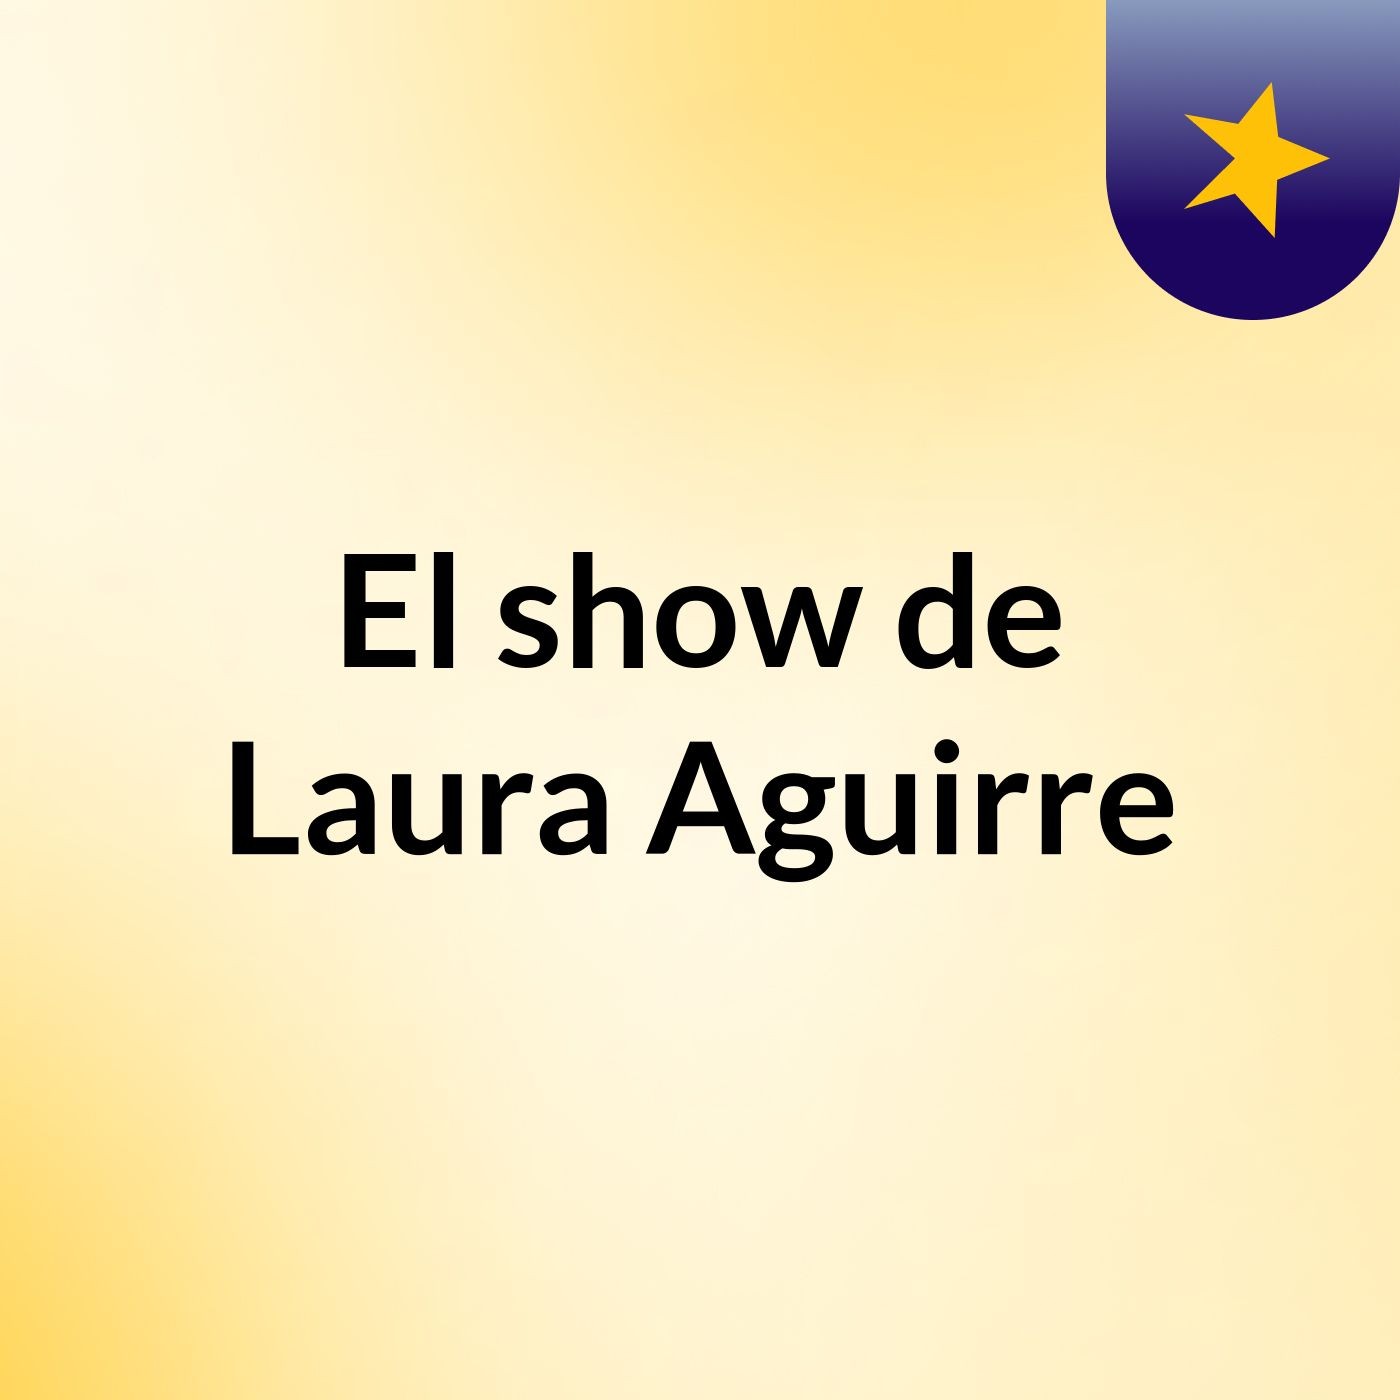 El show de Laura Aguirre